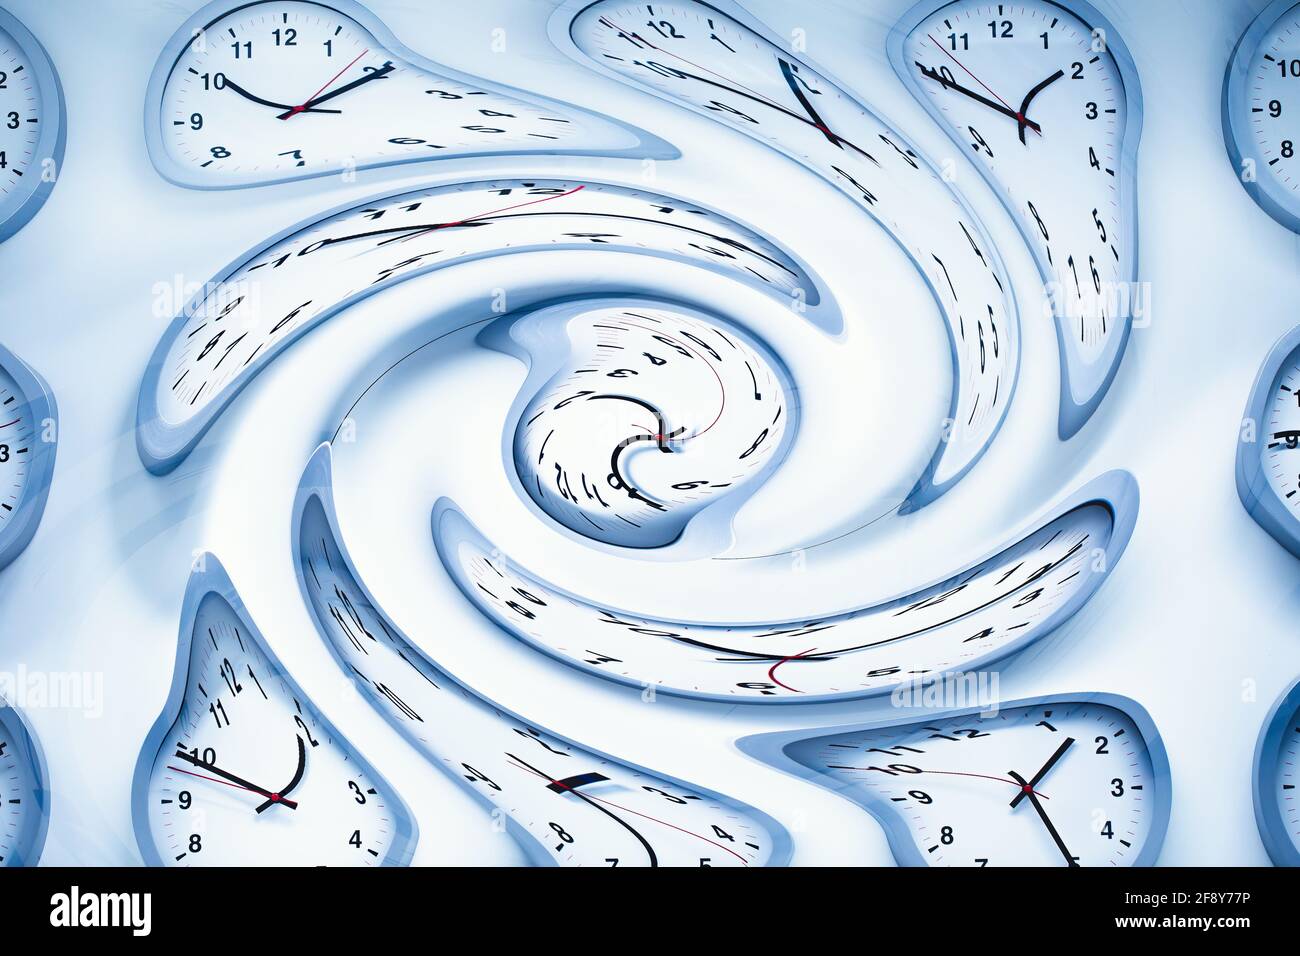 Espacio y tiempos, tiempo de reloj distorsión torcida para el concepto curvado curvado de la urdimbre del espacio-tiempo Foto de stock